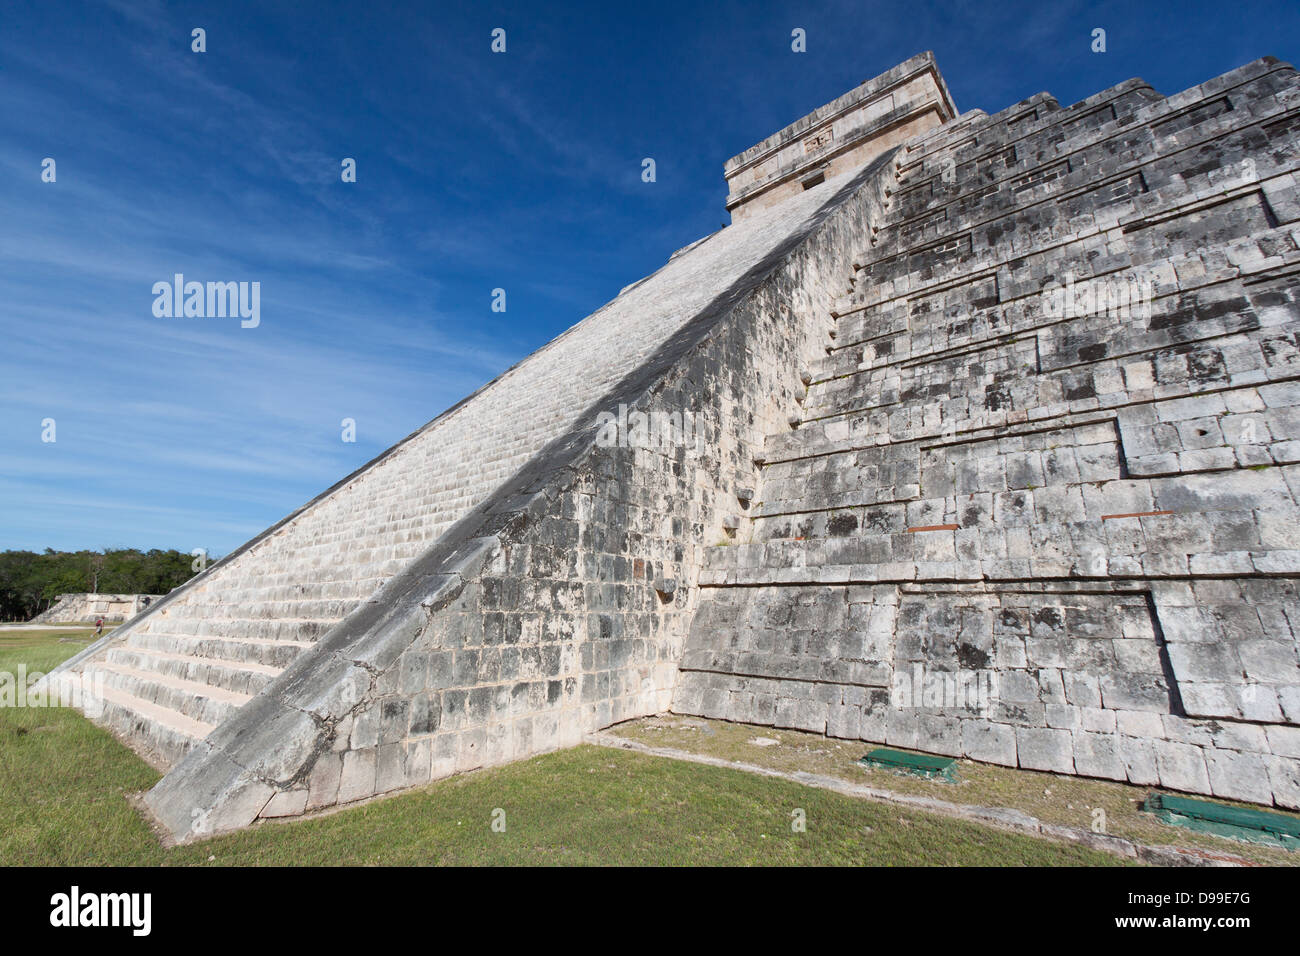 Detalle de la famosa pirámide Maya de Chichén Itza Foto de stock